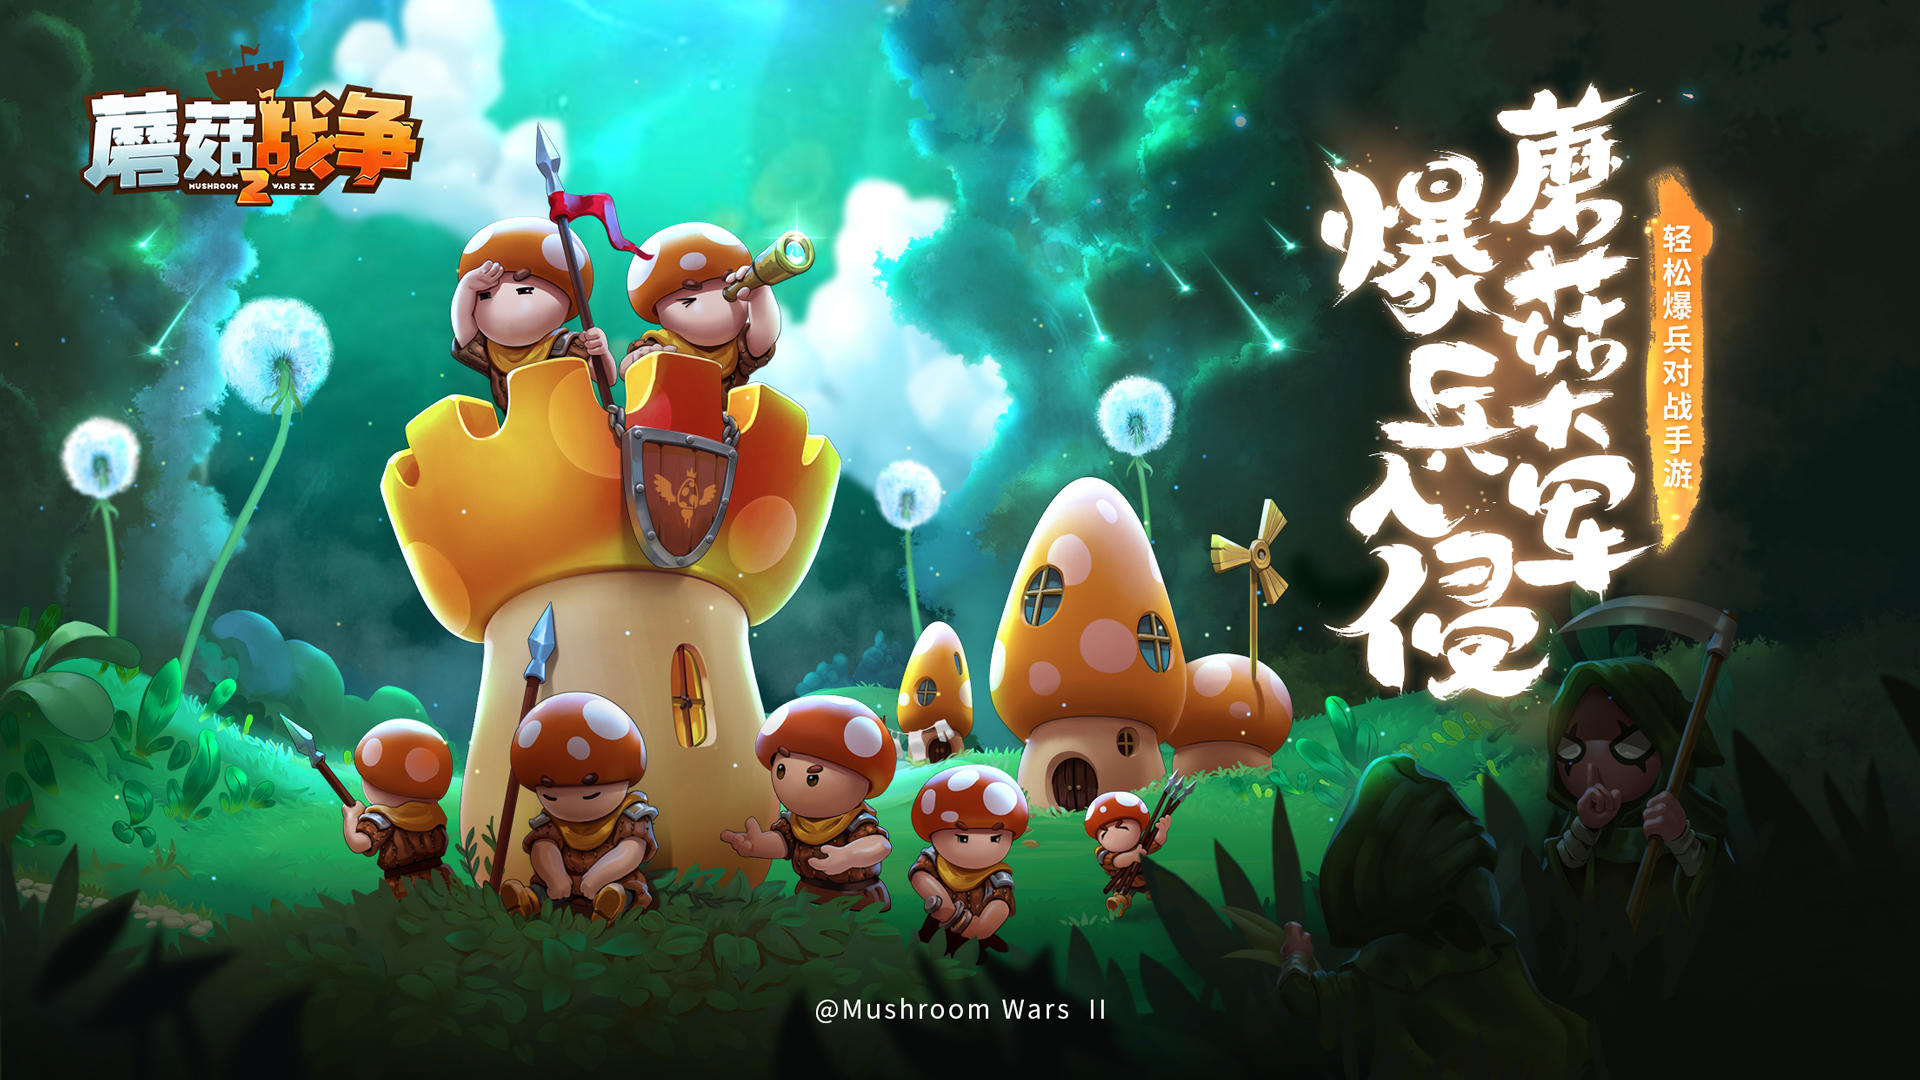 Screenshot 1 of Mushroom Wars 2: Игра в защиту 